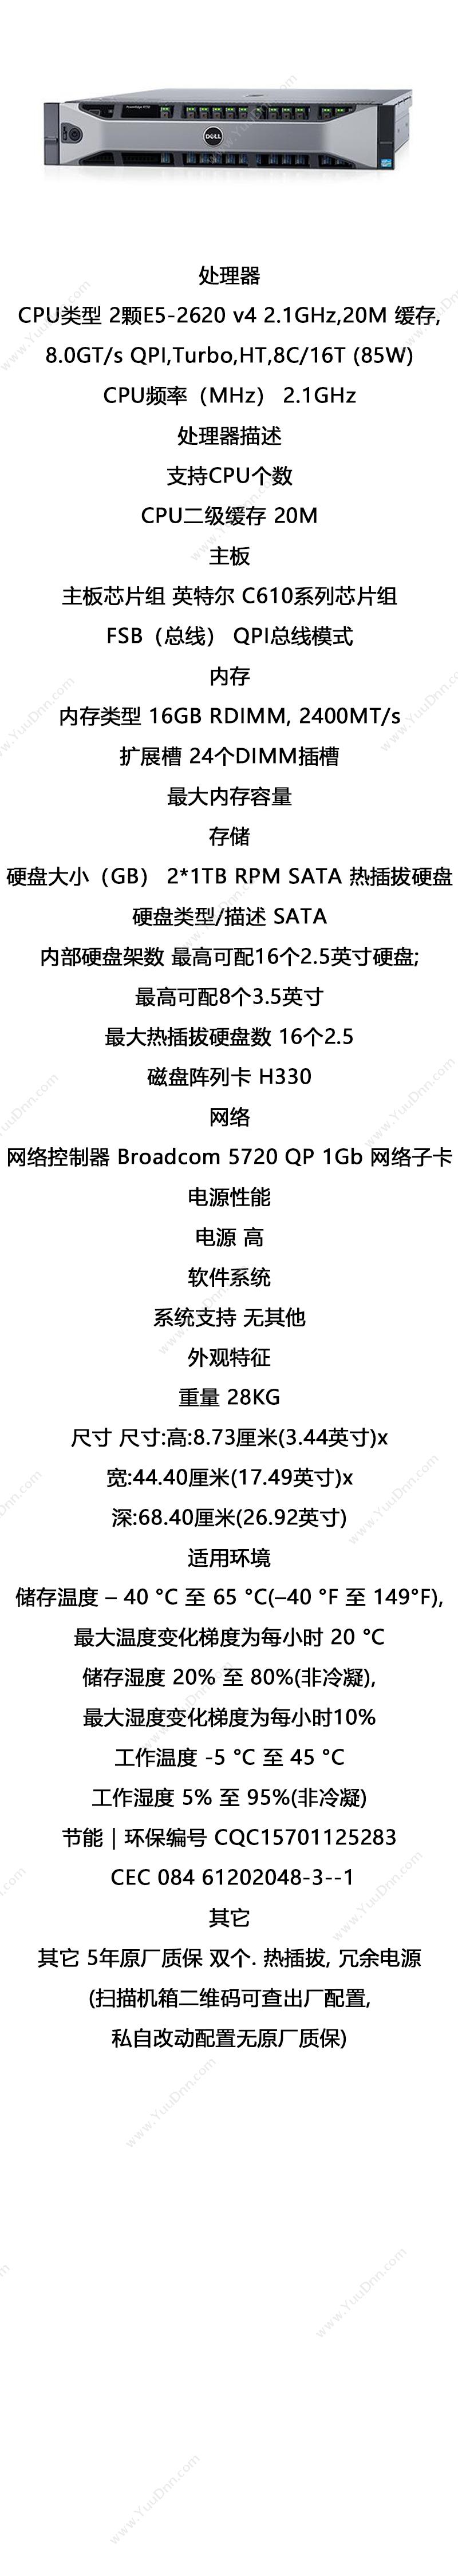 戴尔 Dell PowerEdge R730（两颗E5-2620 v4/2*8G/2*1T/H330/五年质保） 服务器 8.73厘米x44.40厘米）x68.40厘米 塔式服务器